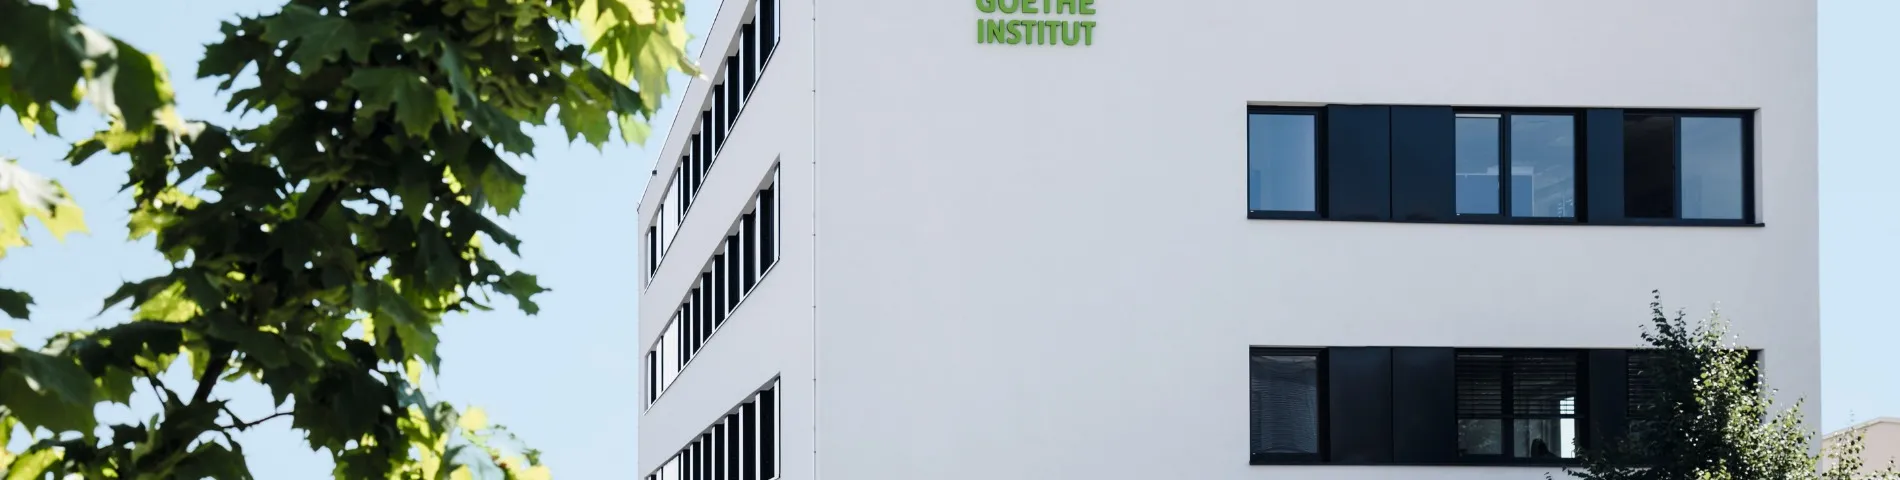 Goethe-Institut صورة 1